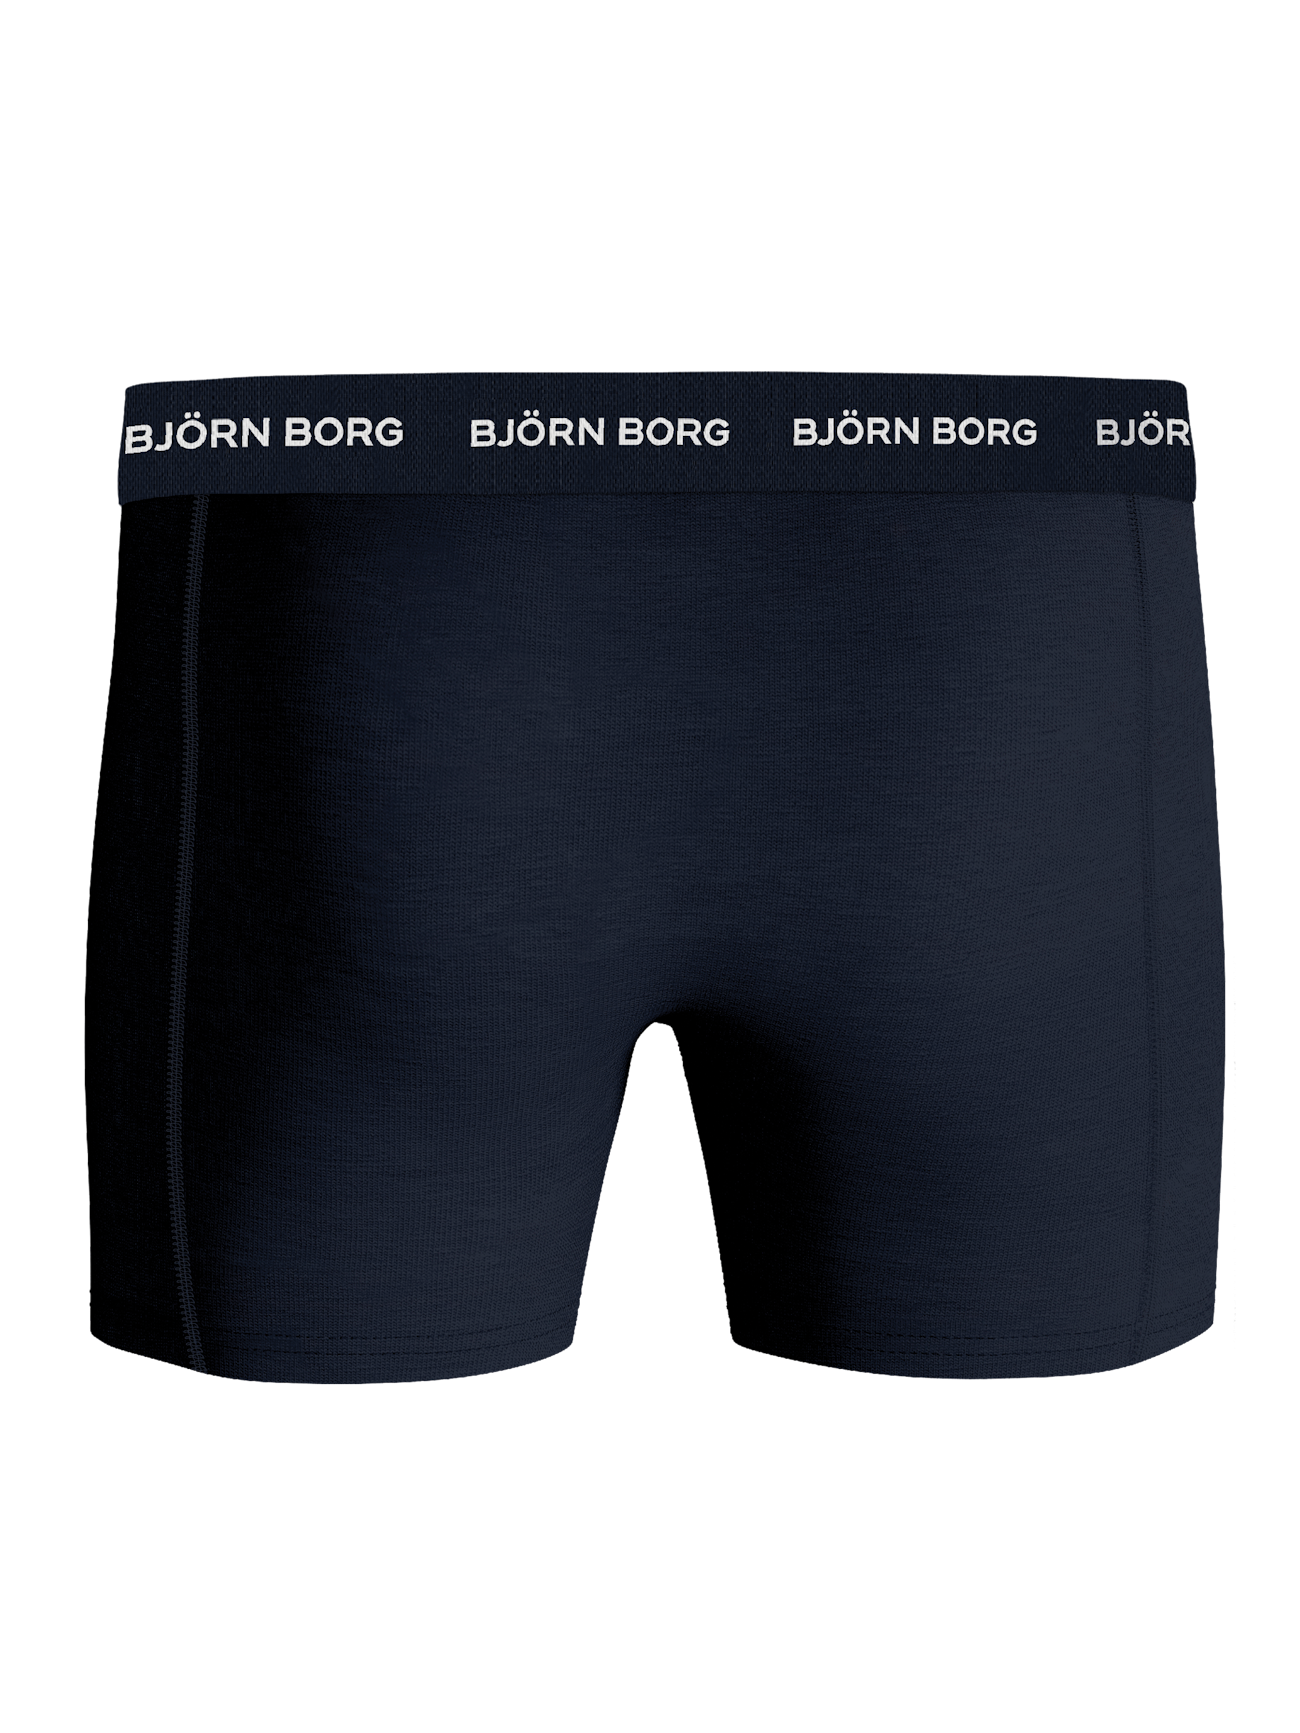 Calvin Klein BLACK Men's 3-Pack Cotton Boxer Briefs, US X-Large